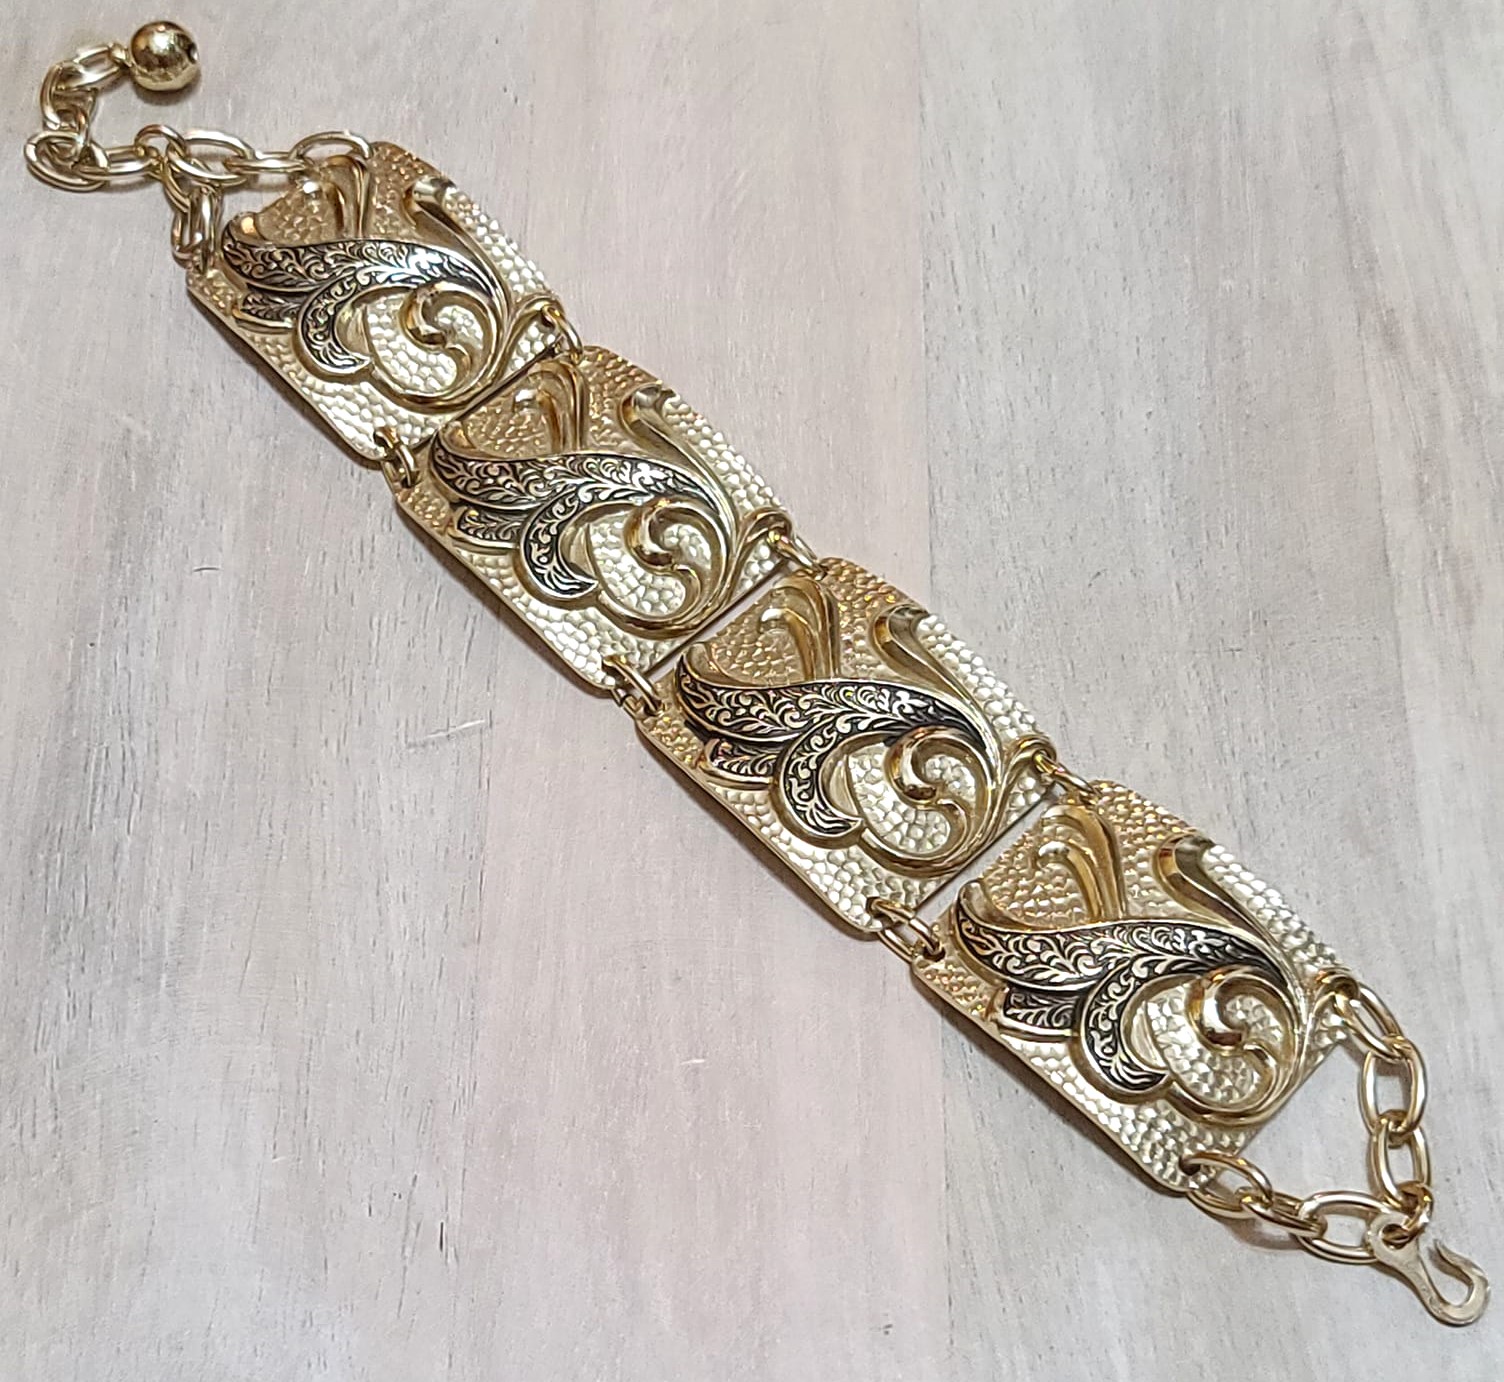 Scrolled link bracelet, vintage, made in Germany